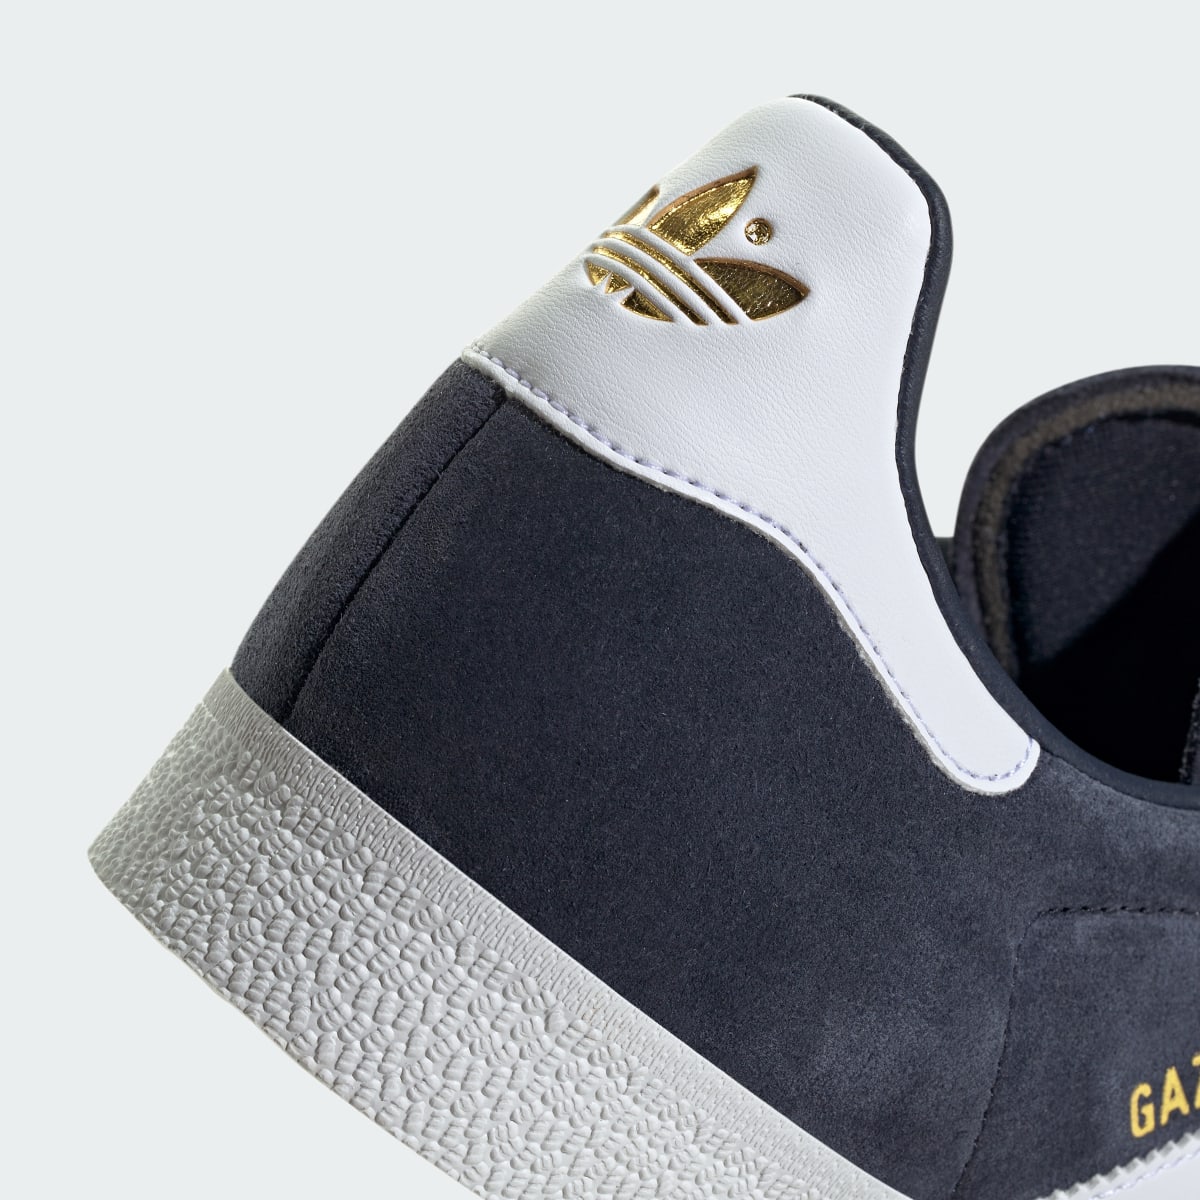 Adidas Gazelle Ayakkabı. 10